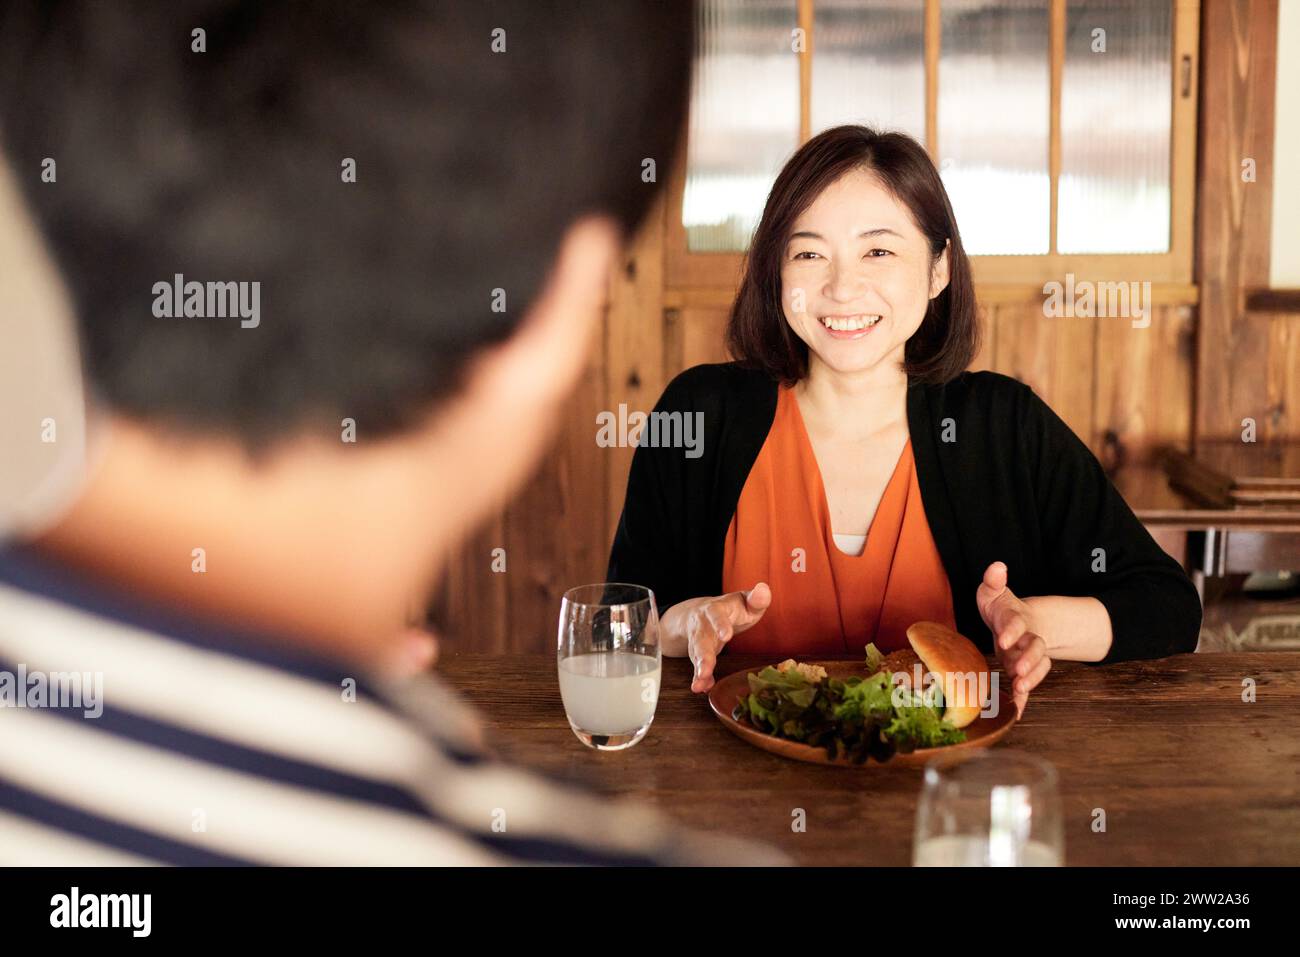 Eine Frau, die an einem Tisch sitzt, mit einem Sandwich und einem Glas Wasser Stockfoto